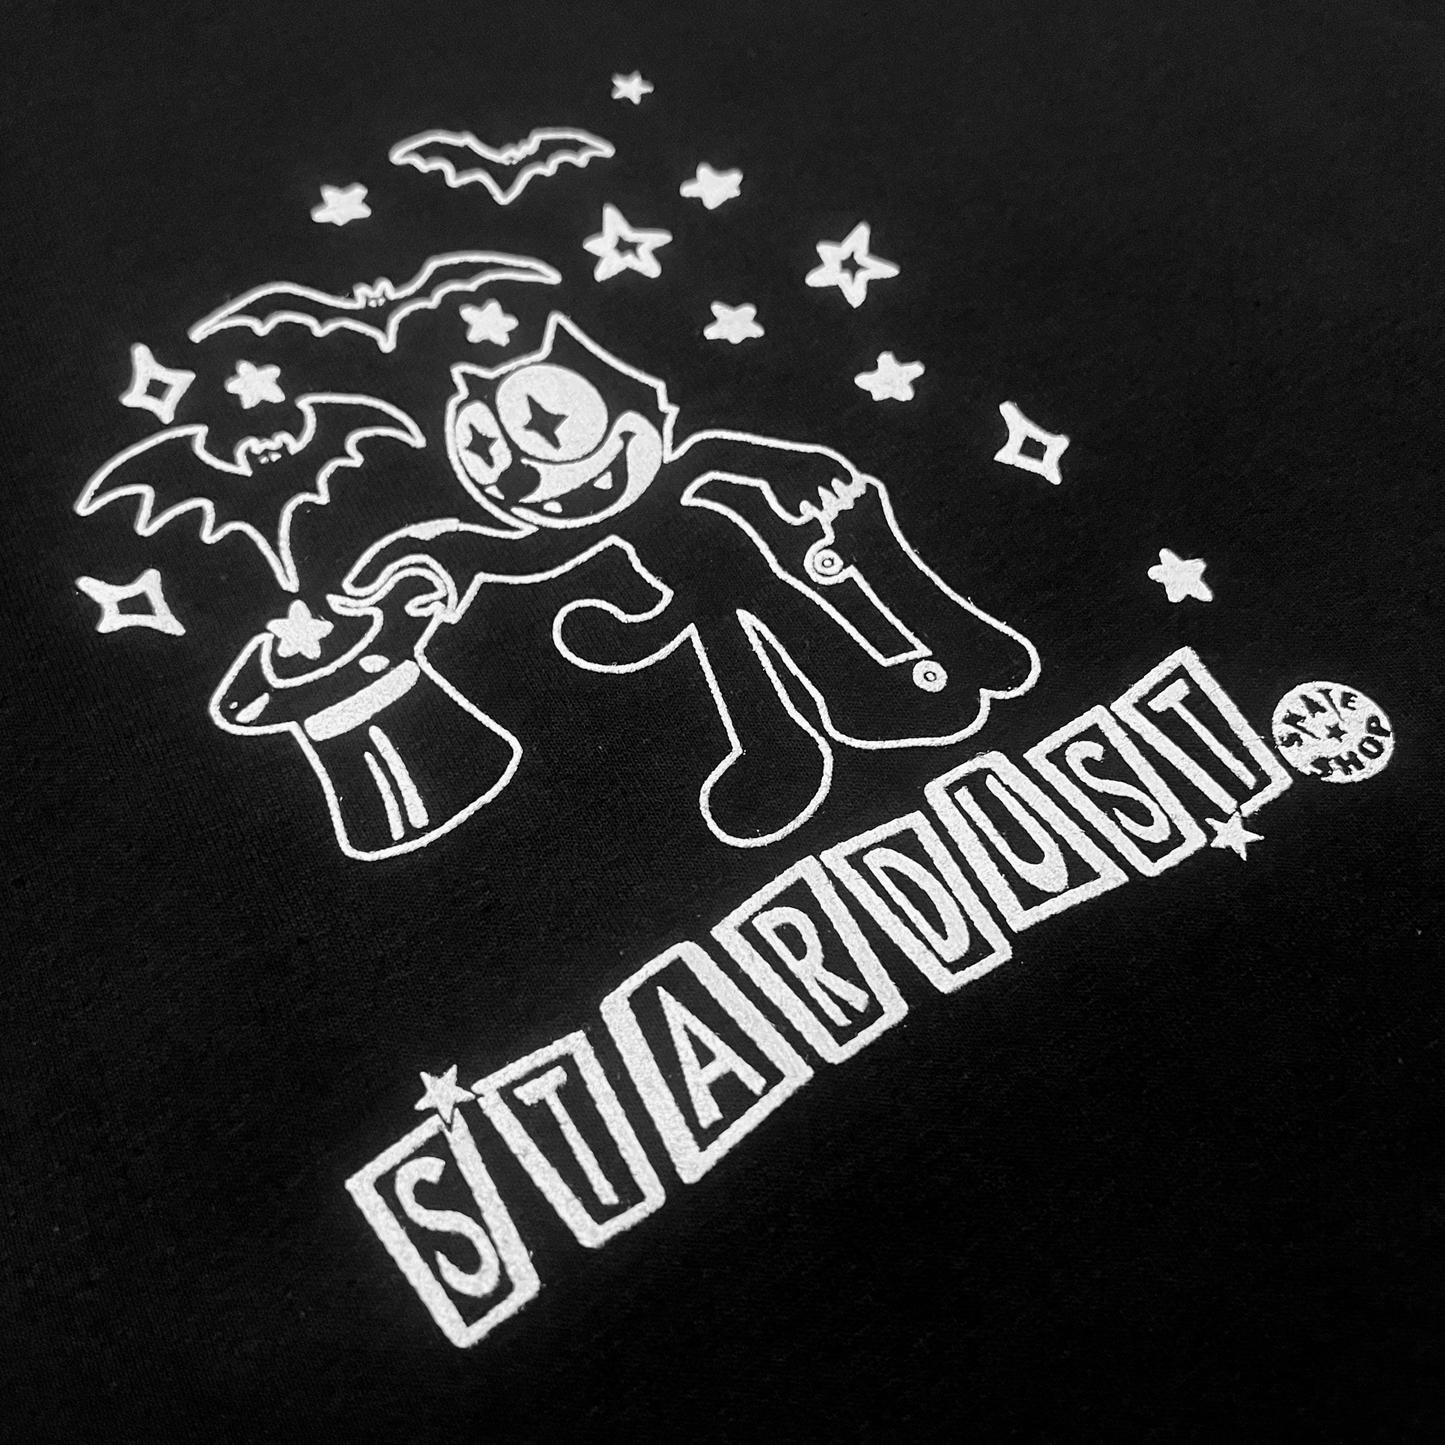 Stardust Skate Shop Felix 02 Tee 024 Black / White